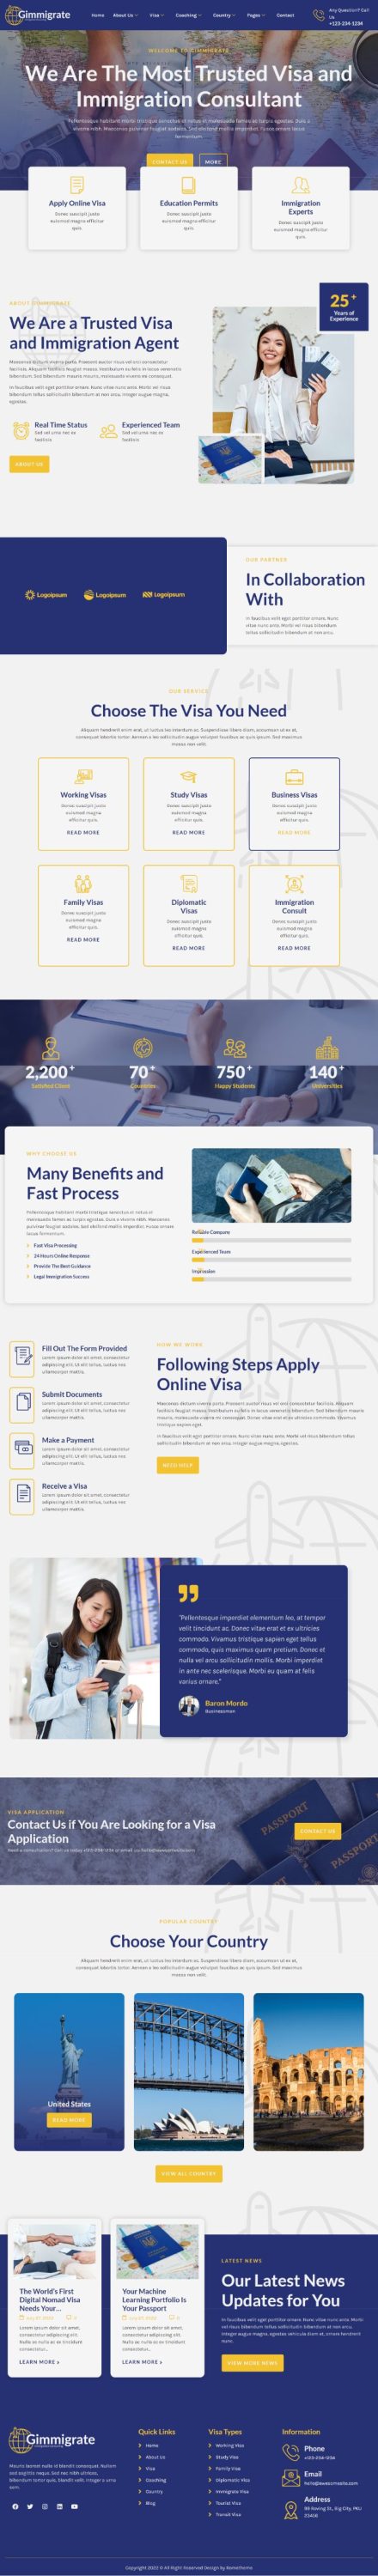 Mẫu website dịch vụ định cư visa - Gimmigrate